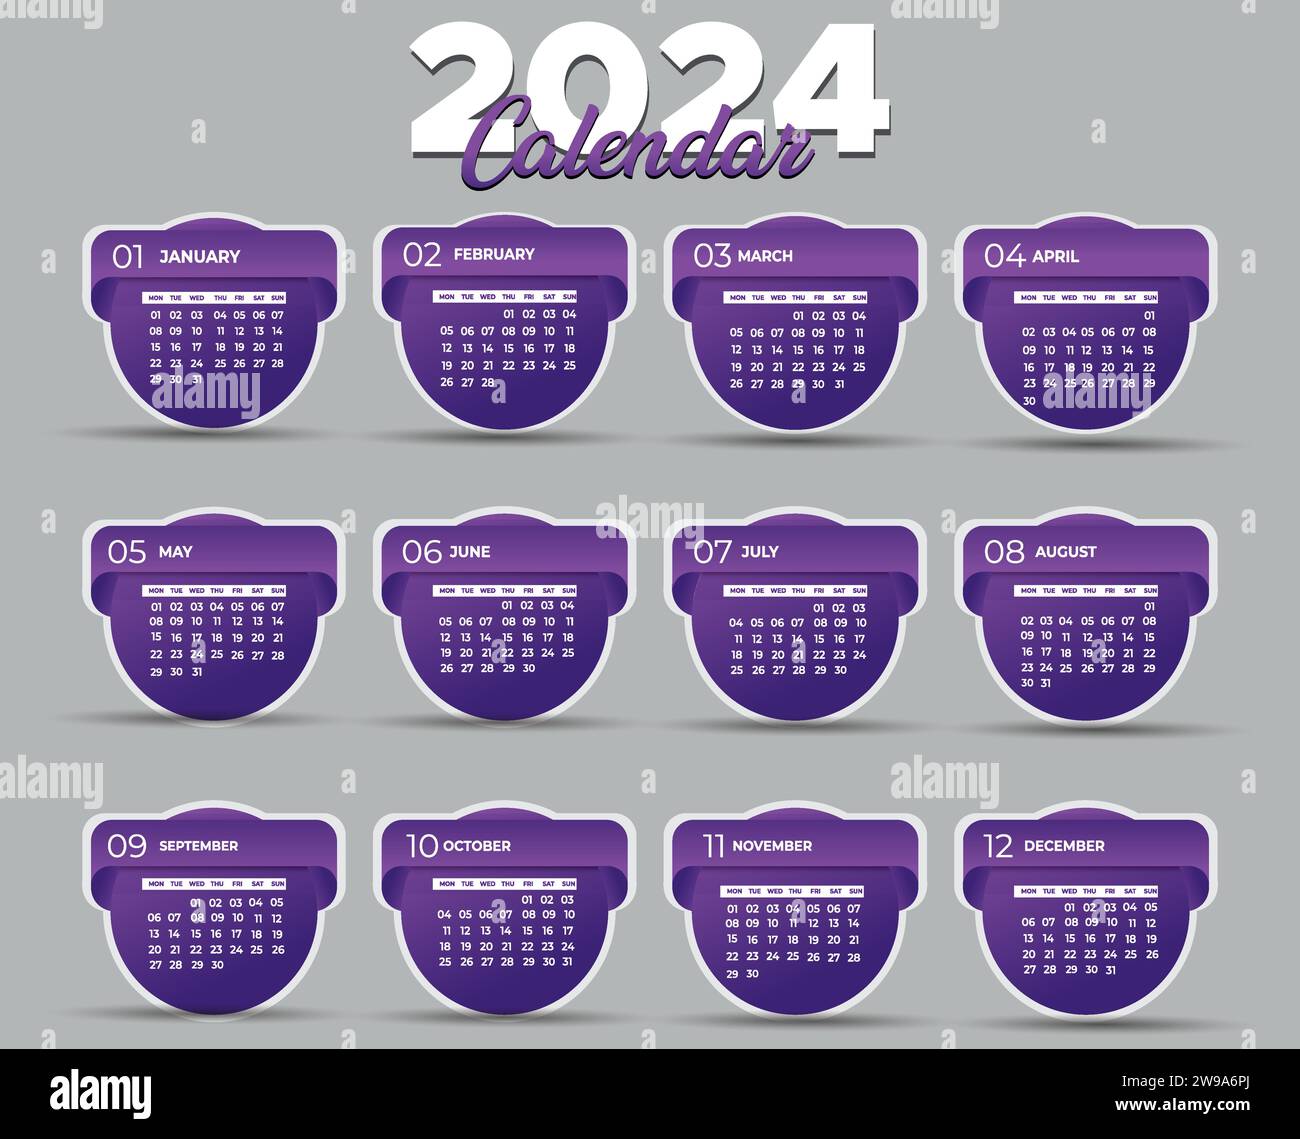 Kalender 2024 Moderne Layout Vektor-Illustration. Die Woche beginnt am Montag. Kalendersatz für 2024. Stock Vektor